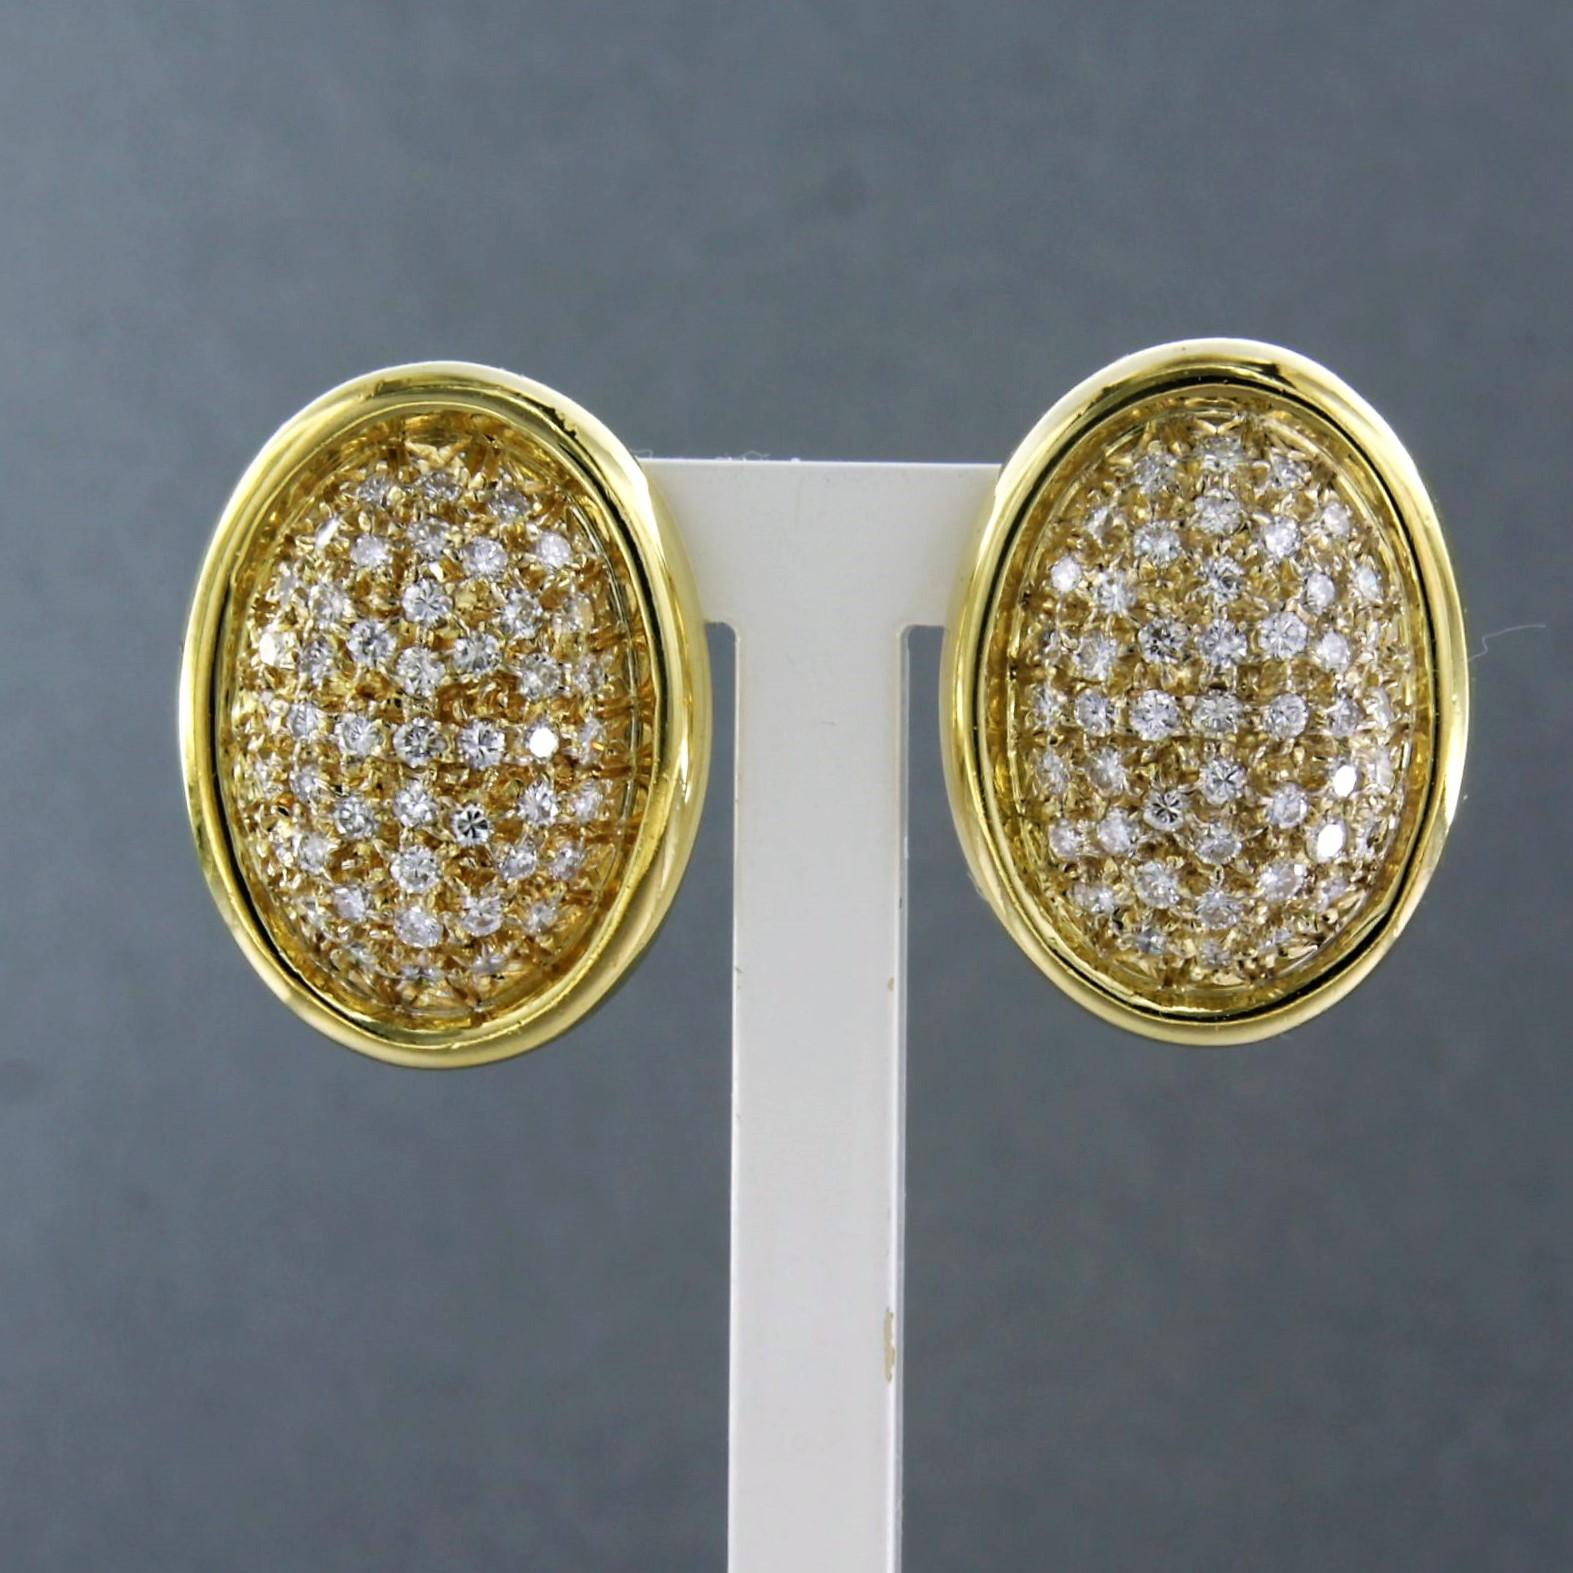 Ohrringe aus 18 Karat Gelbgold mit Diamanten im Brillantschliff von bis zu 1,50ct - F/G - VS/SI

Ausführliche Beschreibung:

die Größe des Ohrclips beträgt 2,0 cm und 1,5 cm Breite

Gesamtgewicht 10,8 Gramm

gesetzt mit

- 94 x 1,5 mm große